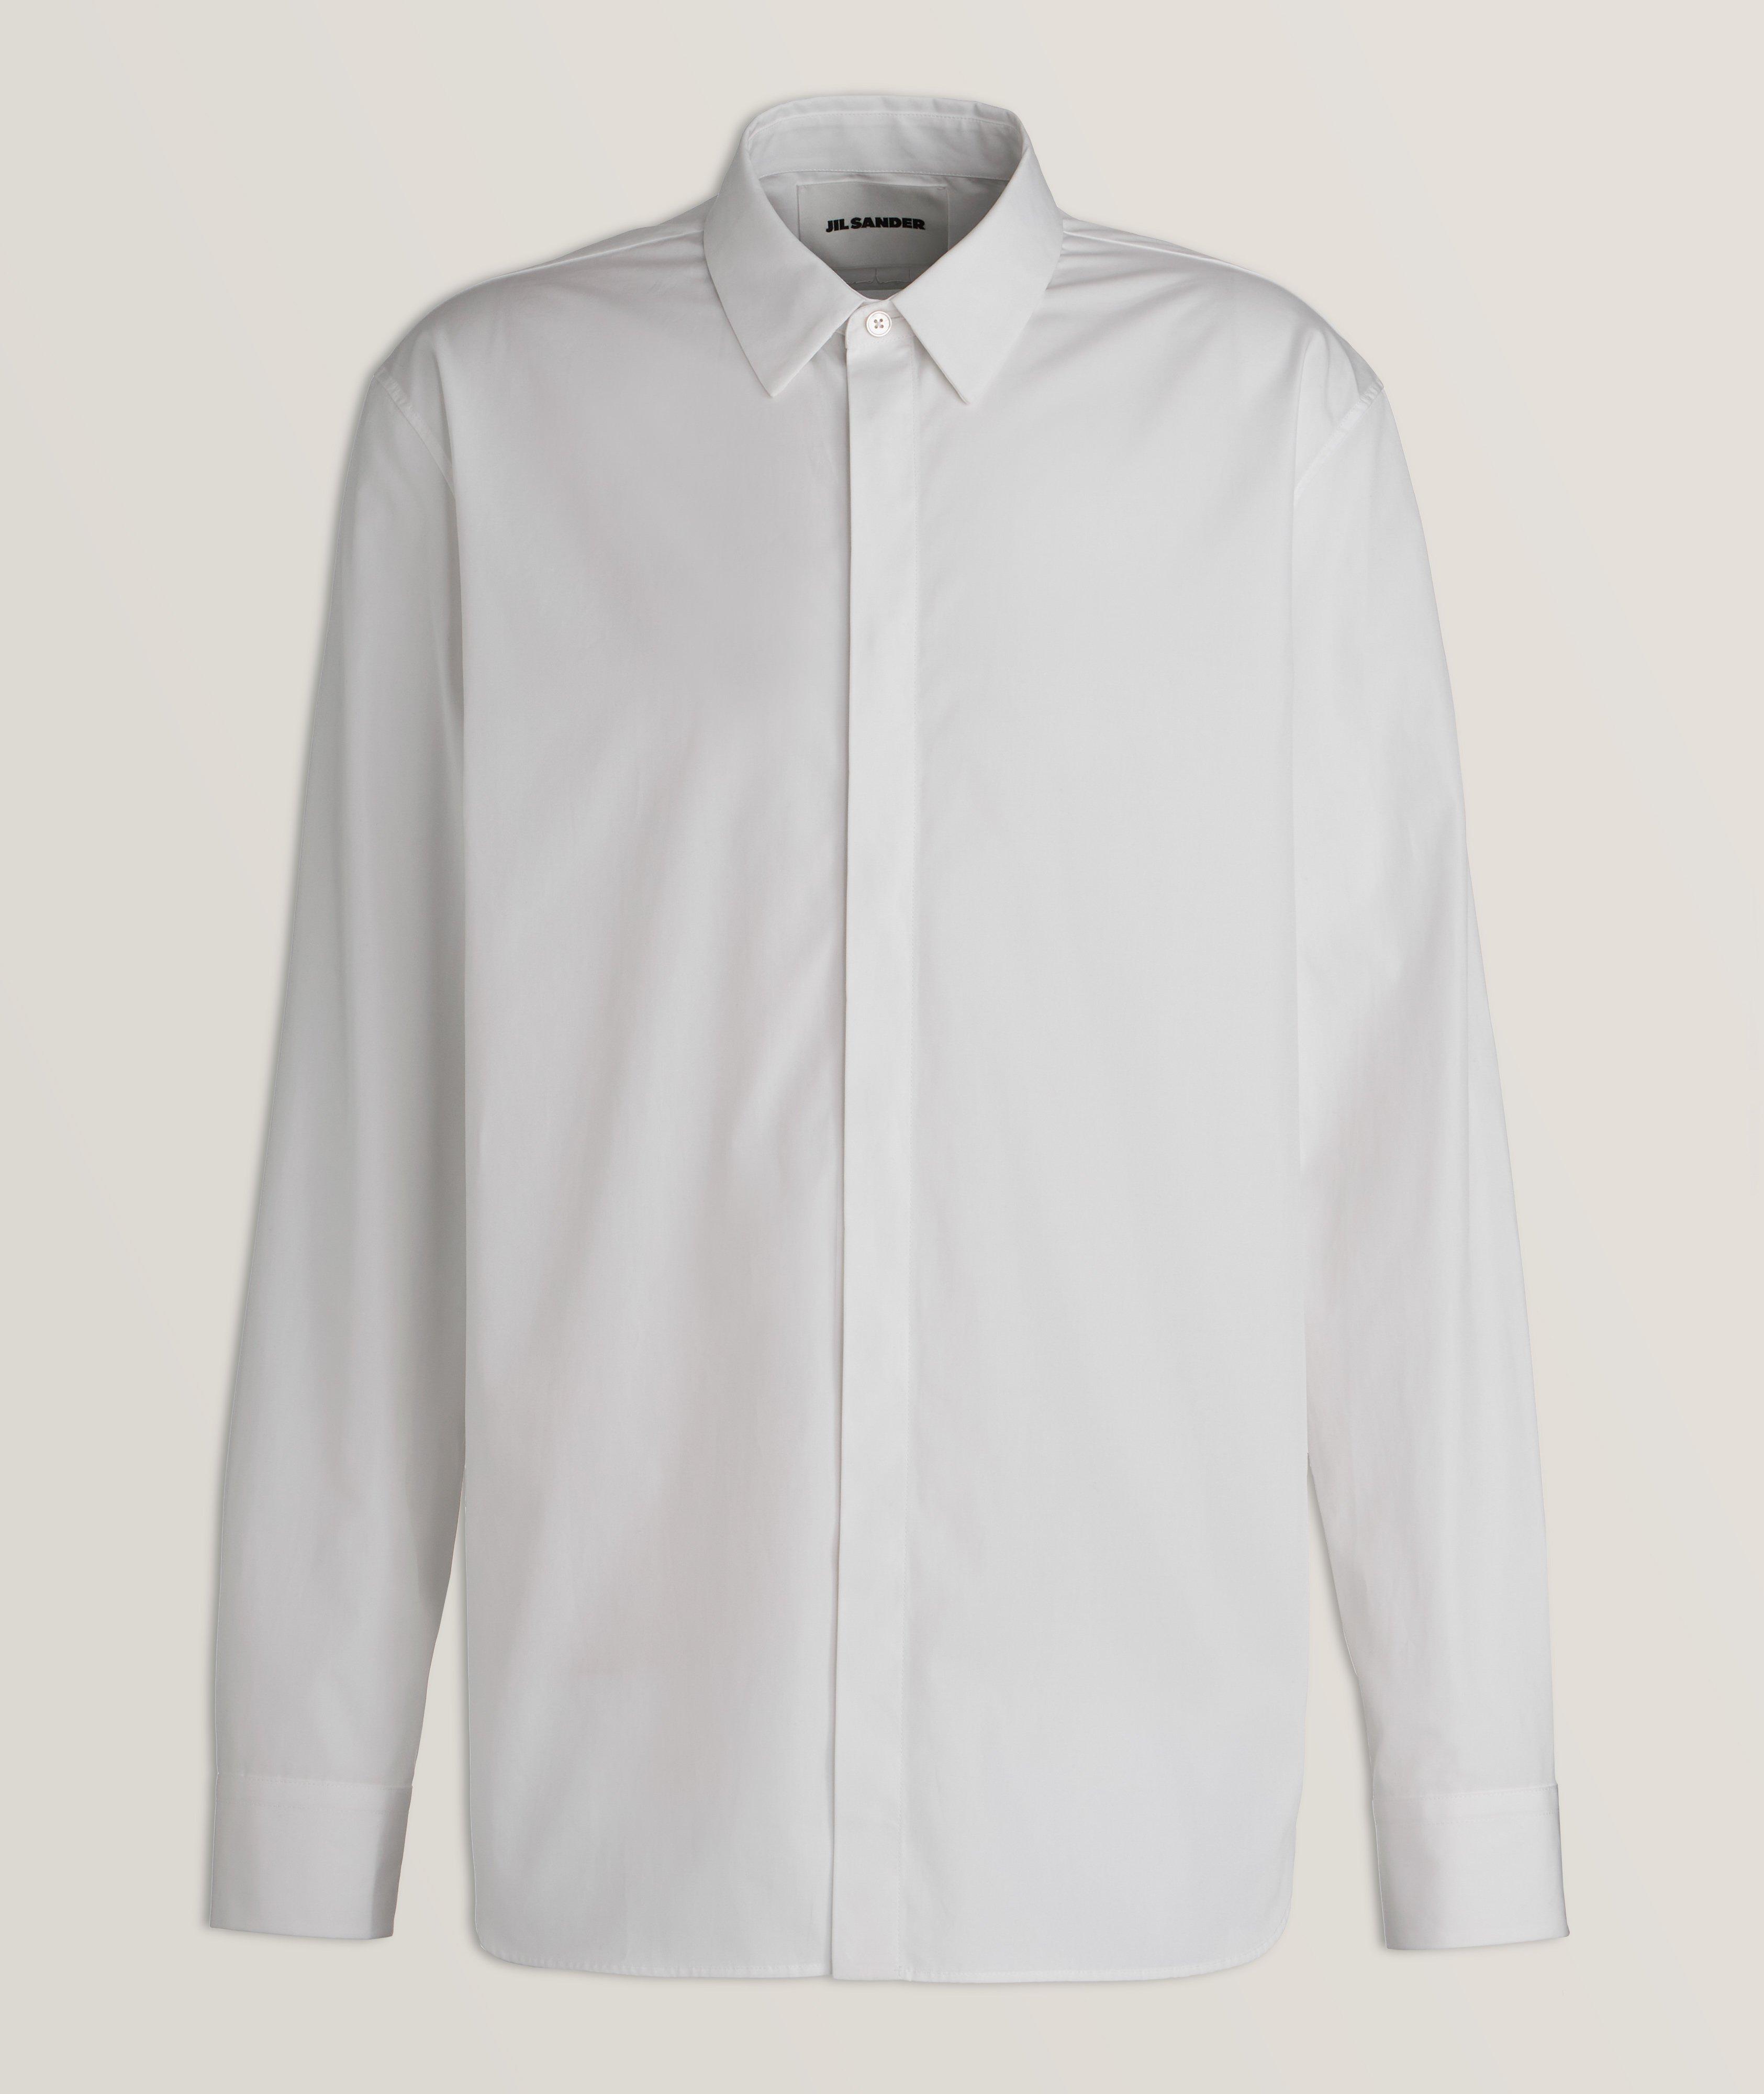 Jil Sander Relaxed-Fit Cotton Sport Shirt